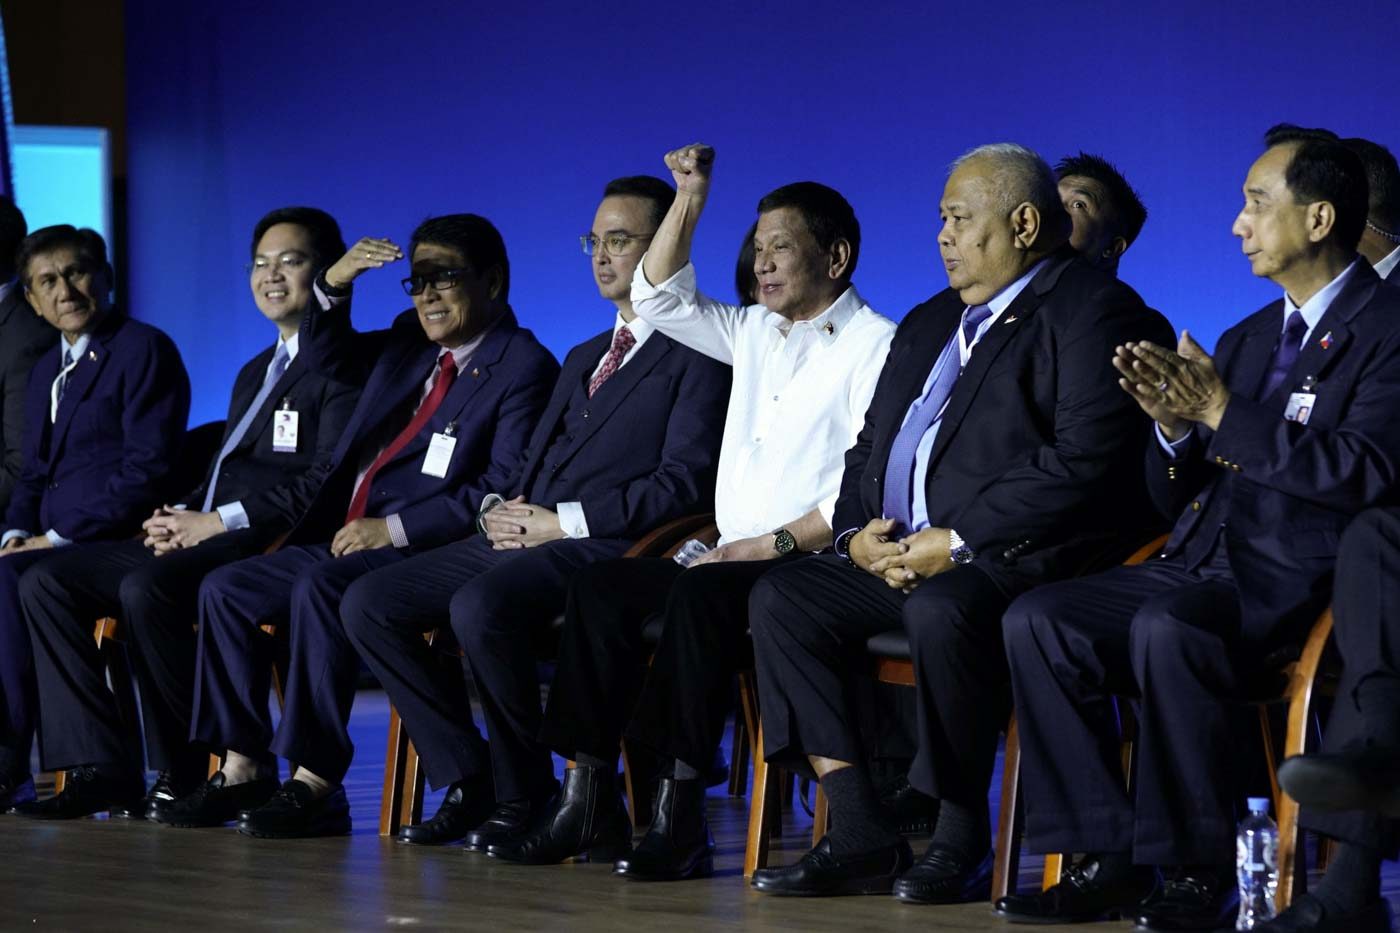 Duterte takes a swipe at Robredo again: ‘Wala kayong makukuha diyan’